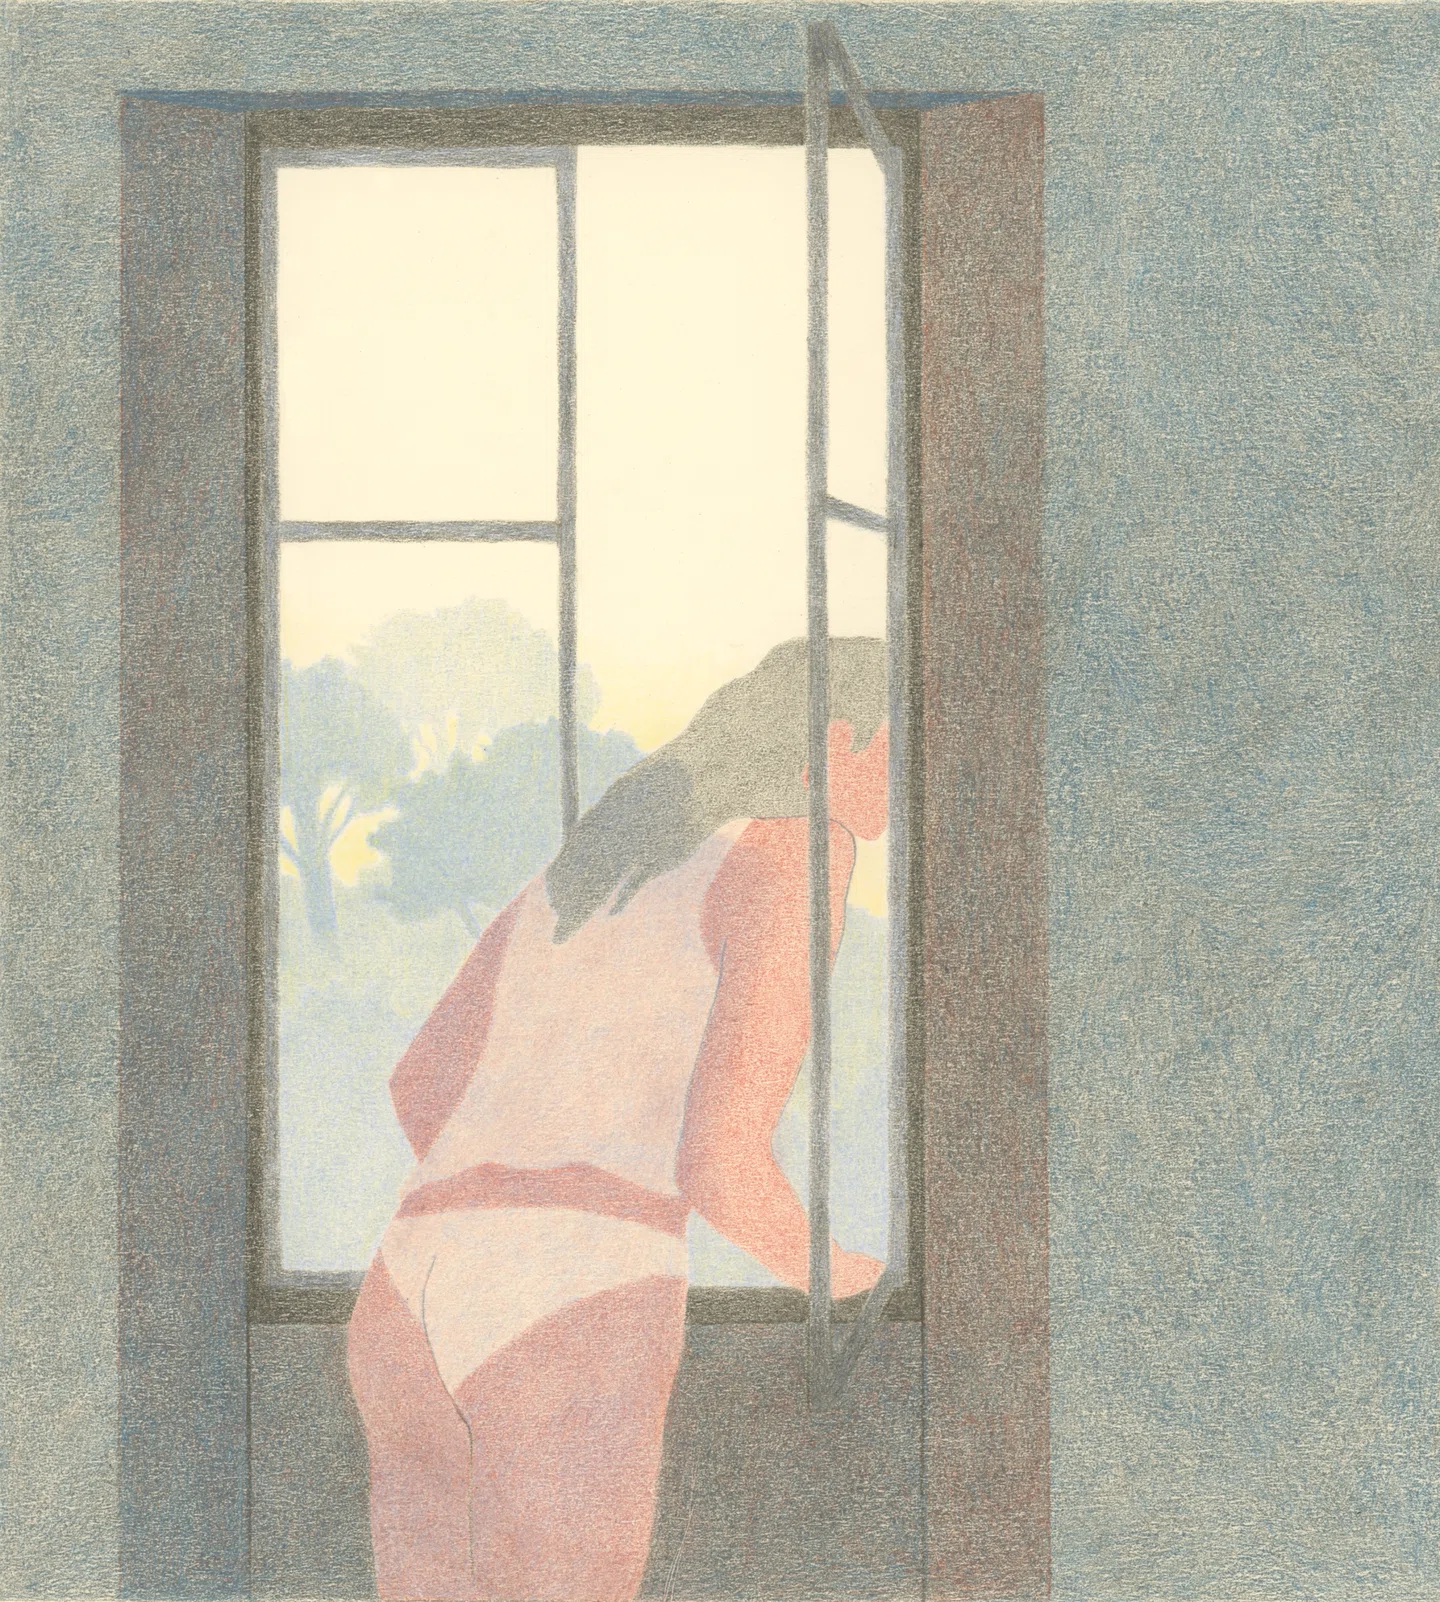 Camille Deschiens desenha cenas suaves de amor, conexão e intimidade